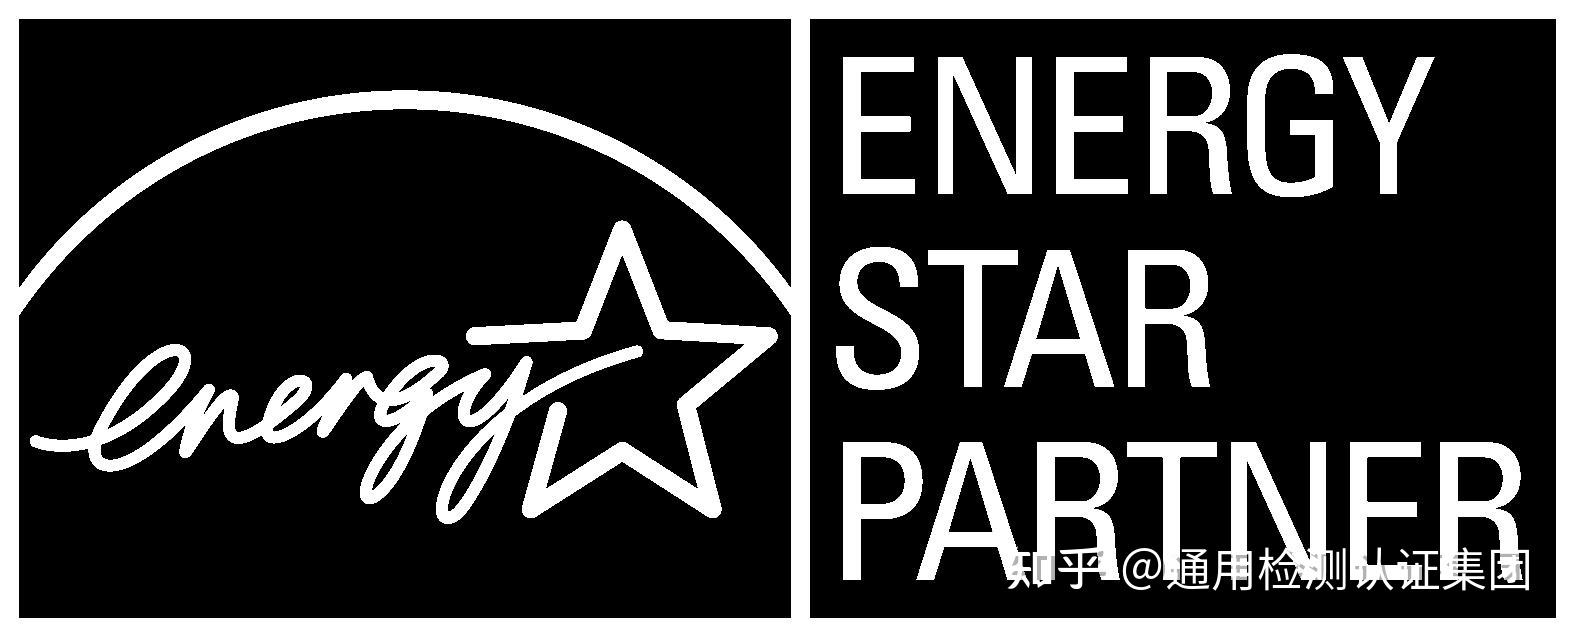 美国能源之星认证美国能源之星认证energystar